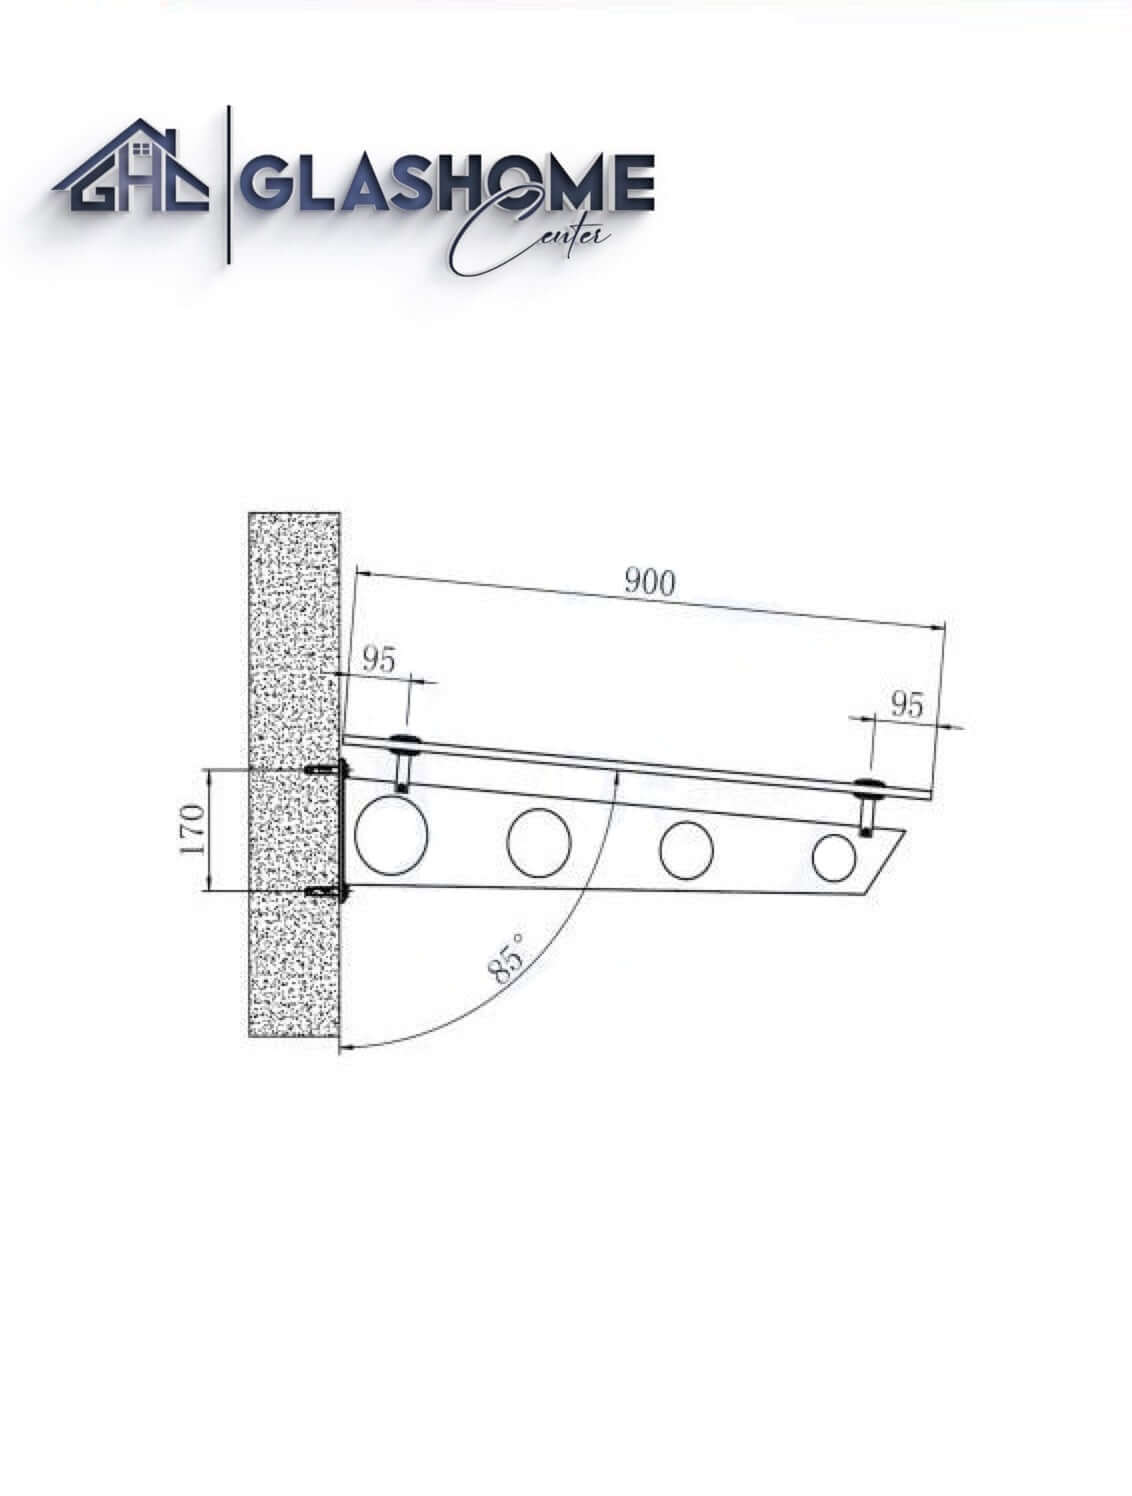 GlasHomeCenter - Glasvordach - Grauglas - 200x90cm - 13.1mm VSG - inkl. 3 schwarze Edelstahlhalterungen Variante "Stockholm"